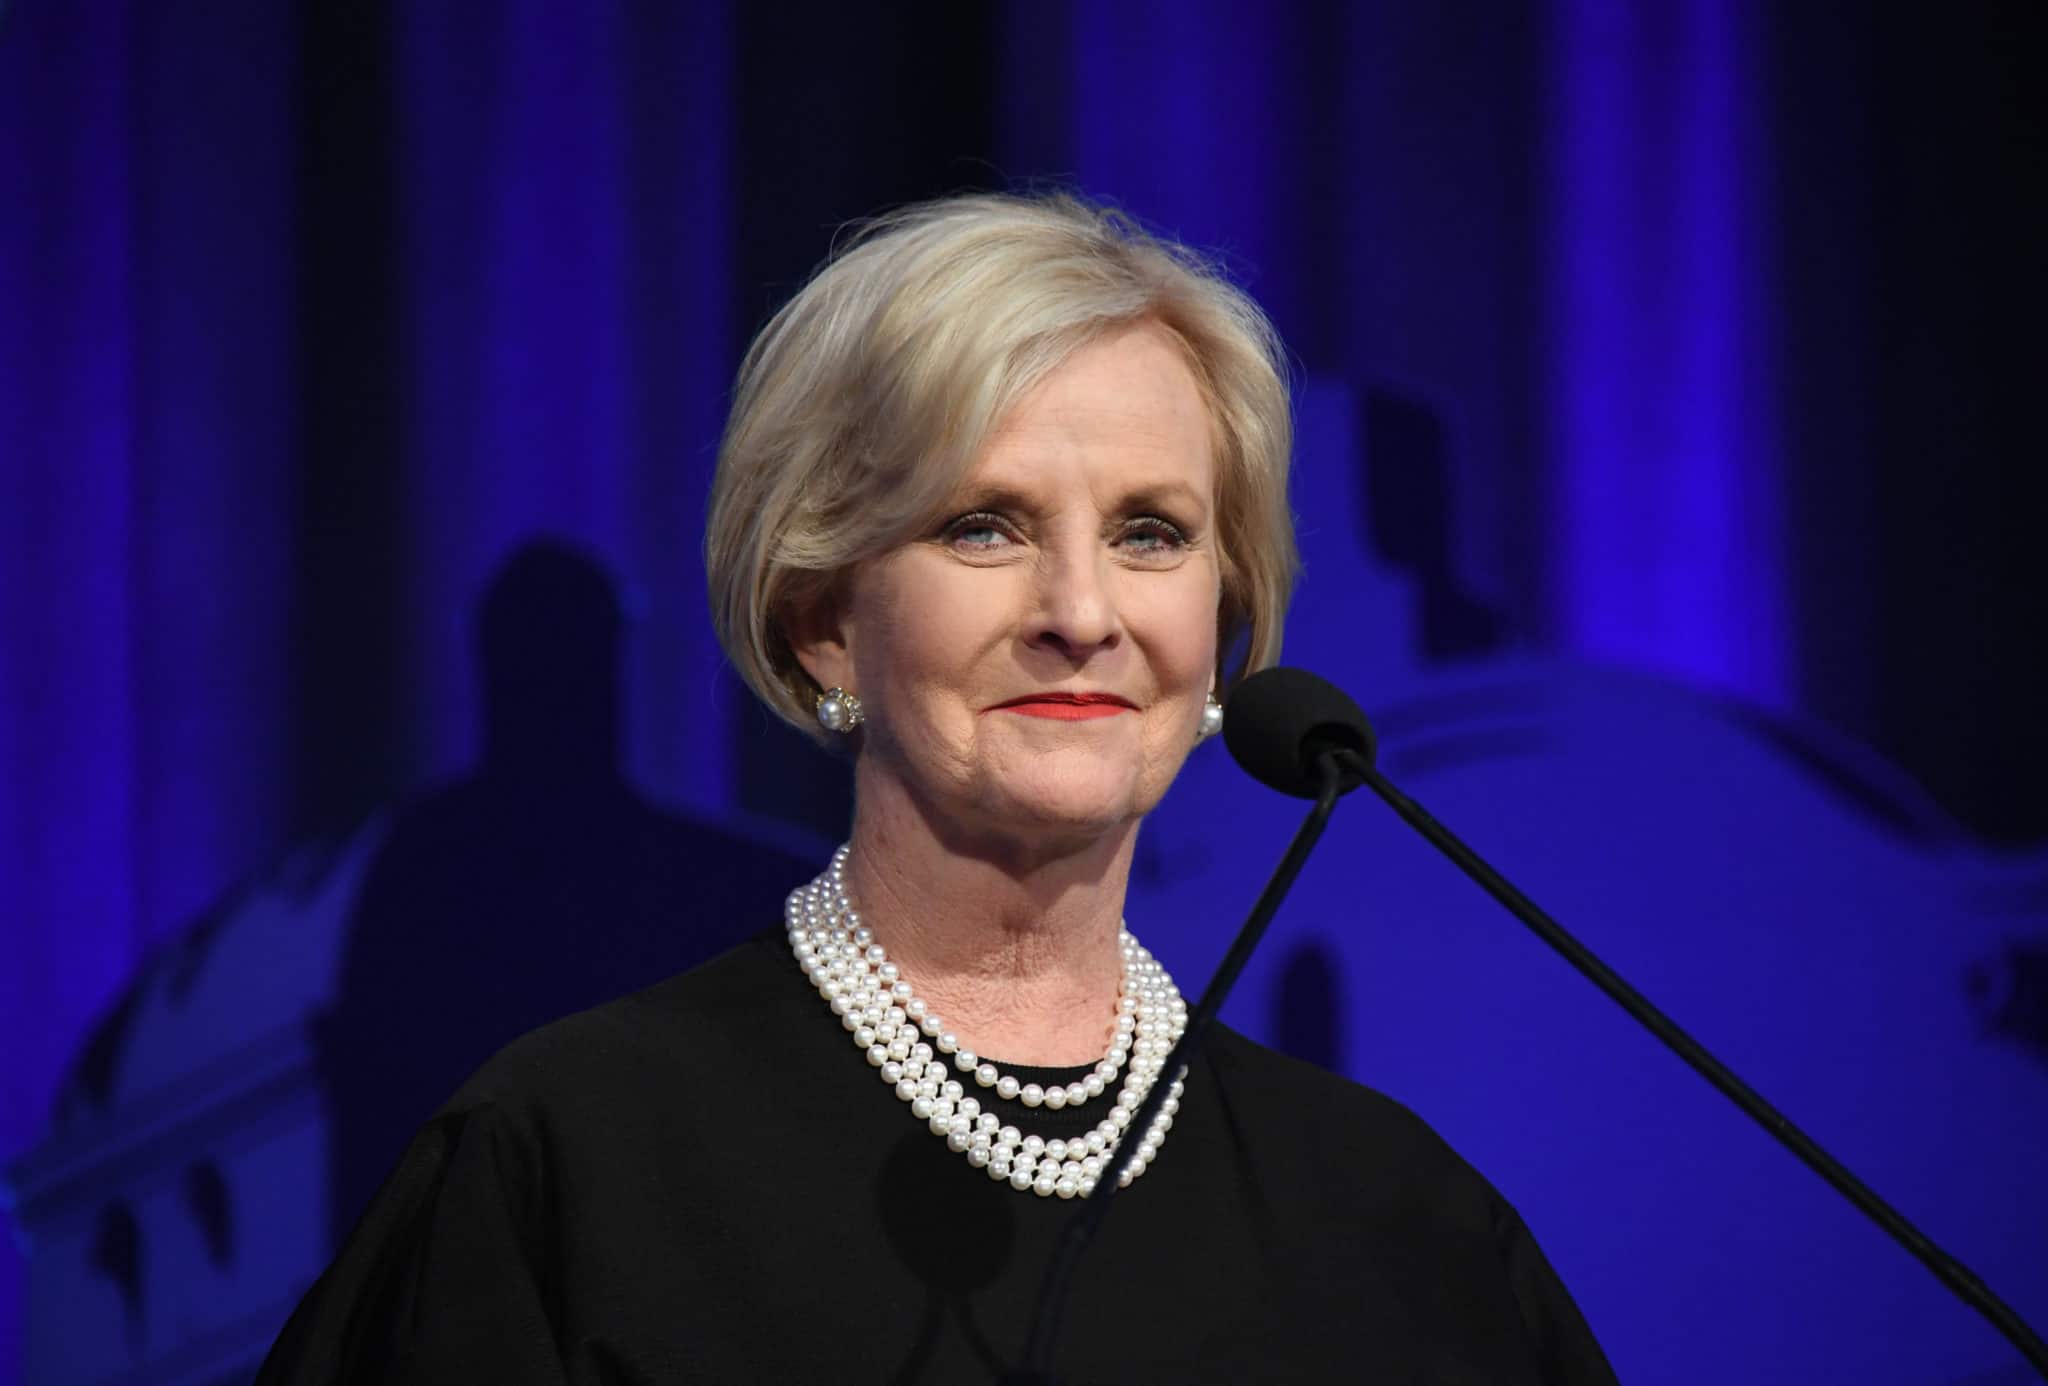 Cindy McCain, widow of former Arizona Senator John McCain